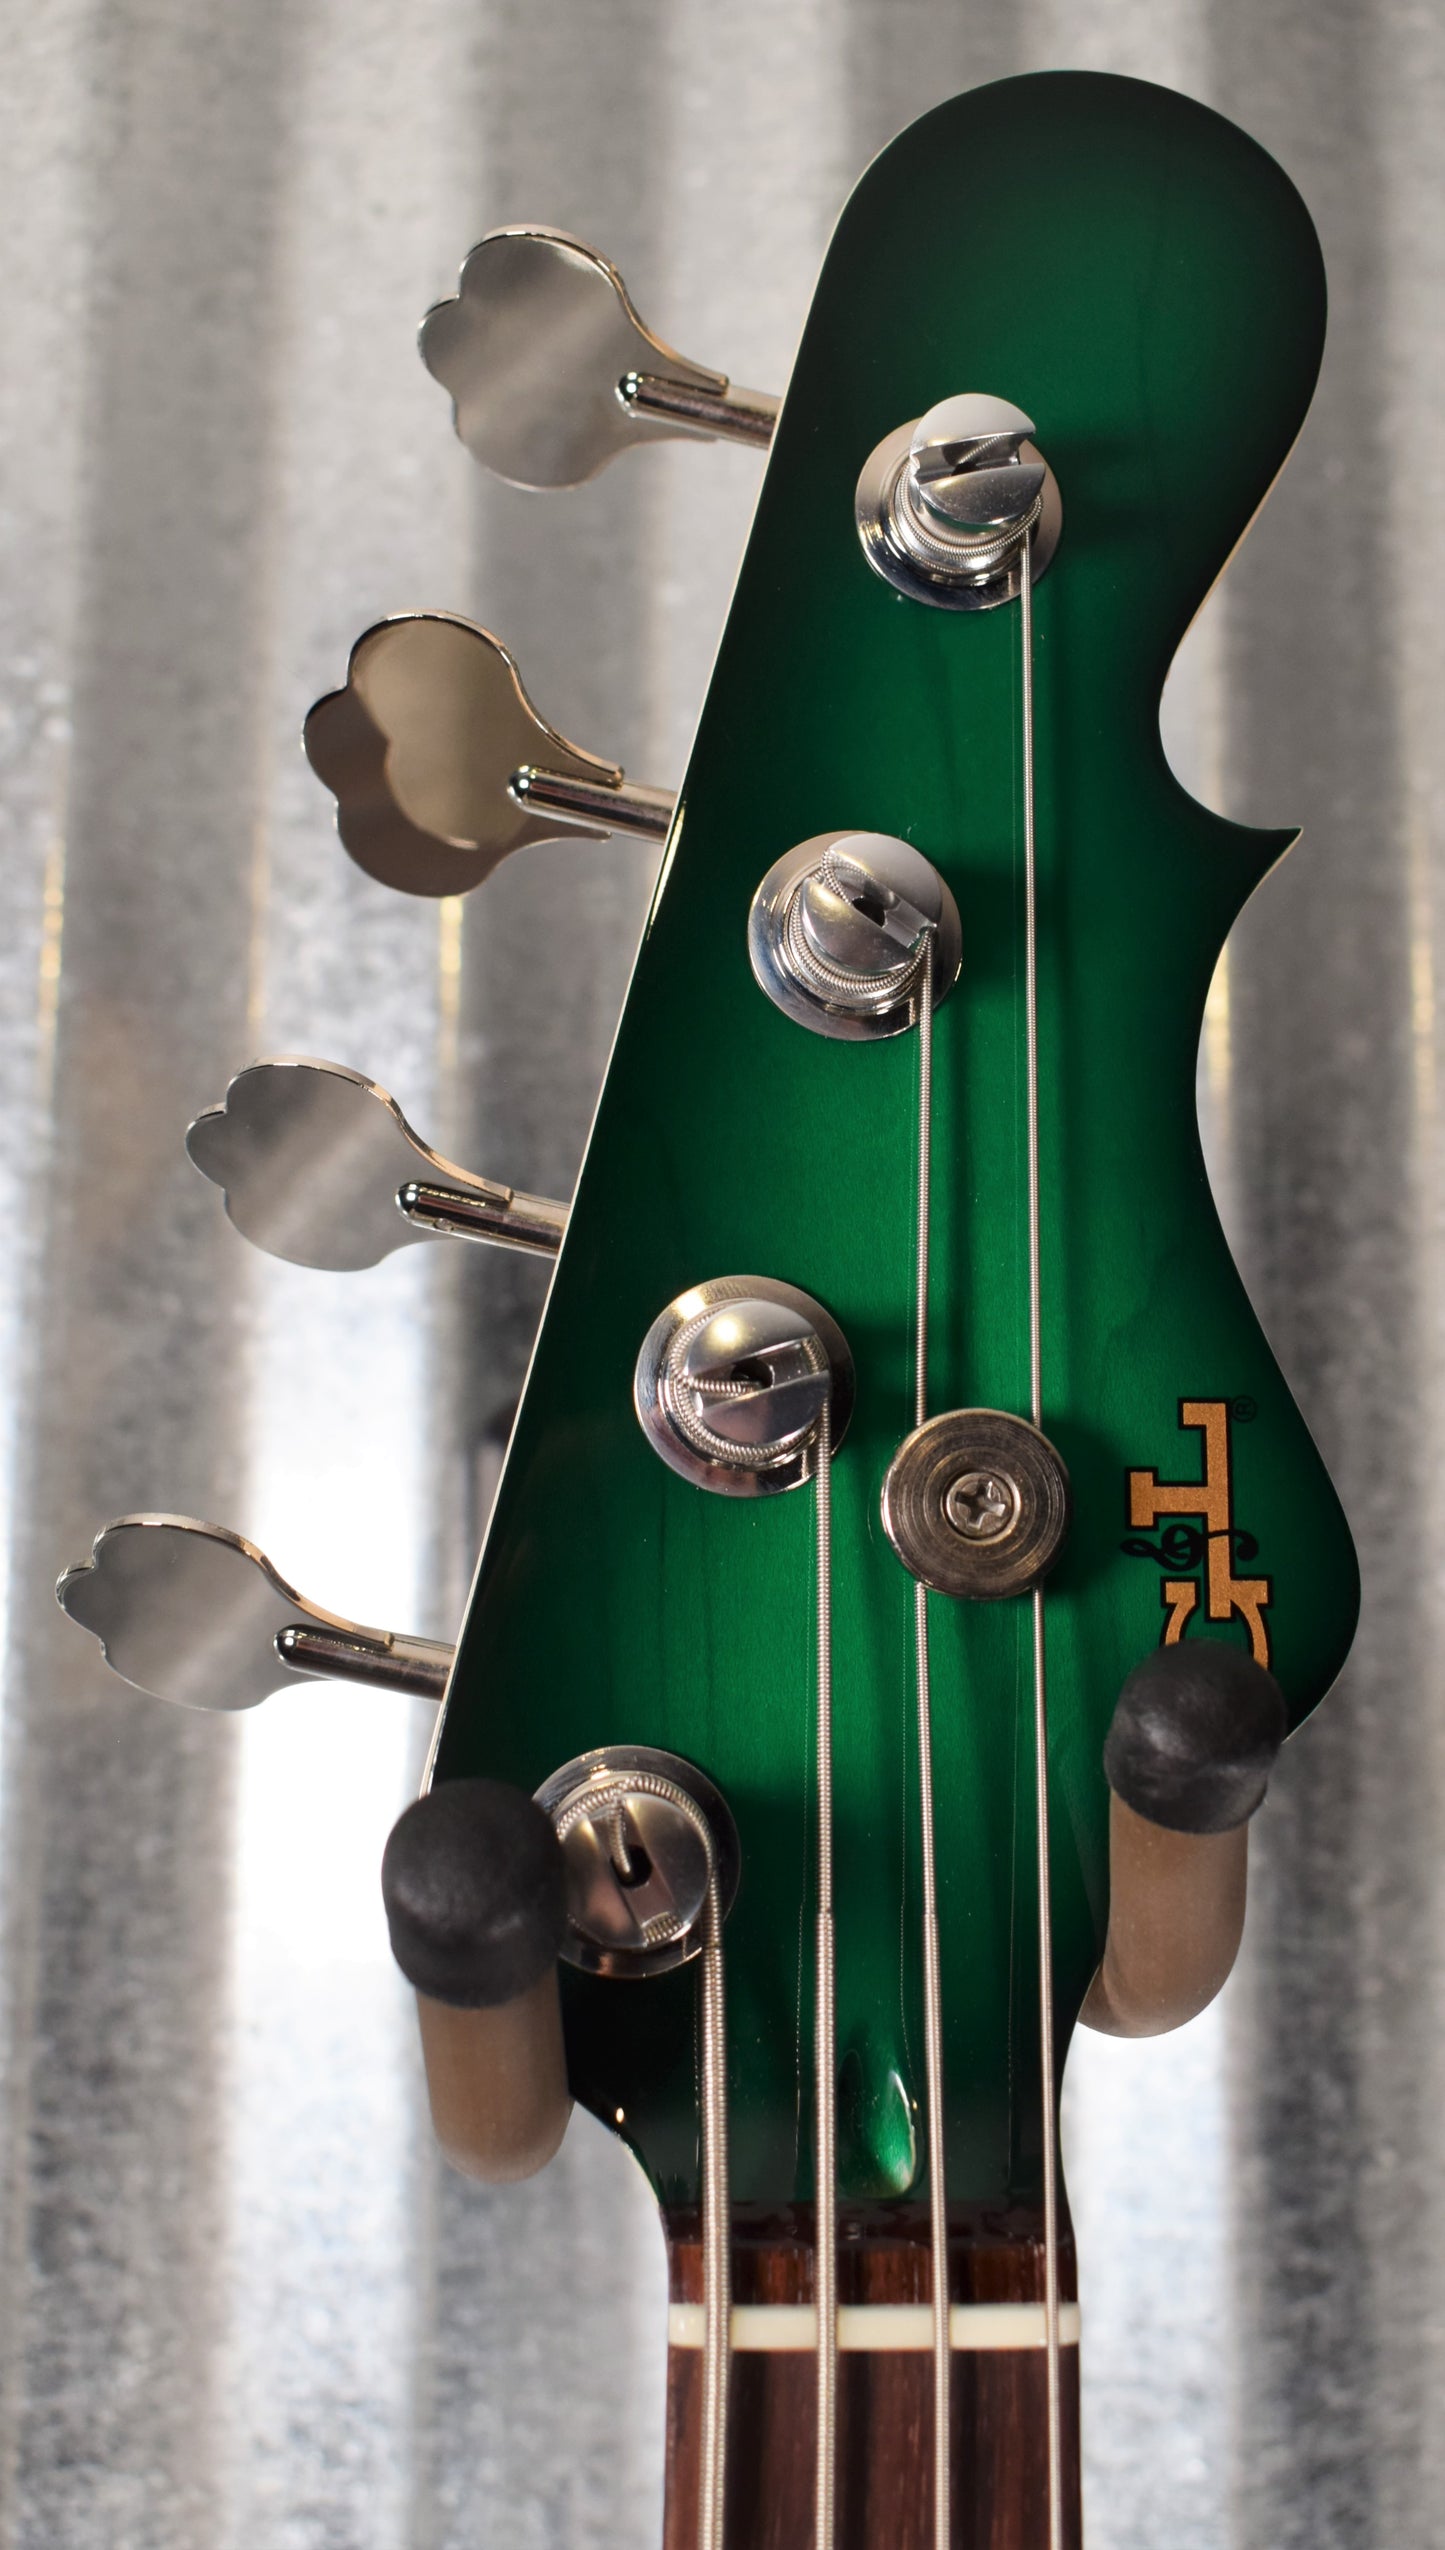 G&L USA JB 4 String Jazz Bass Greenburst & Case 2020 #0176